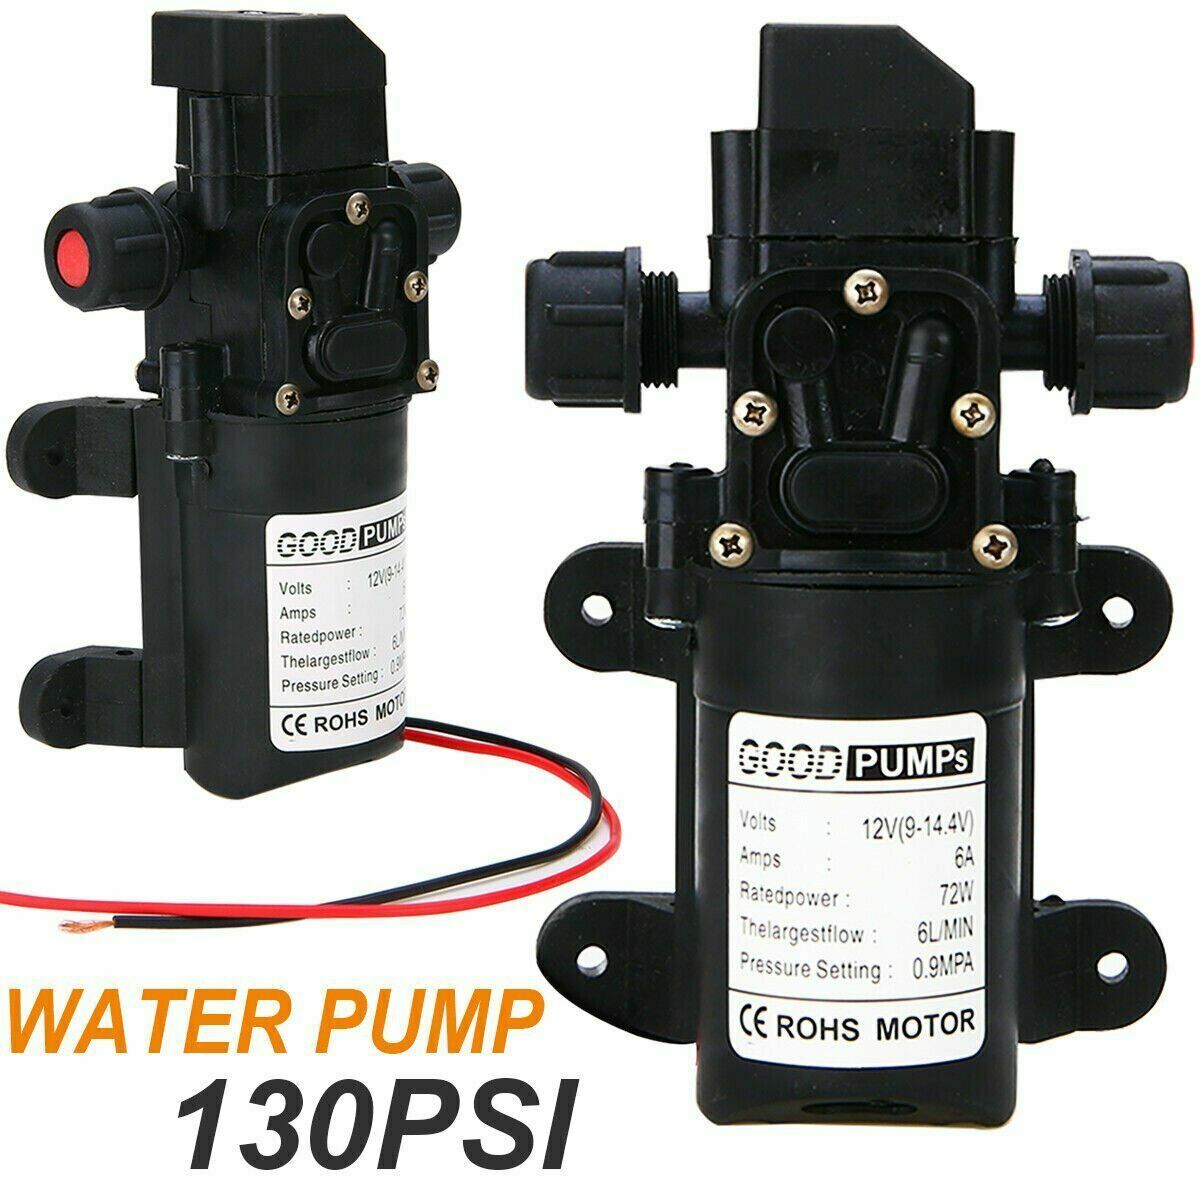 12V Water Pump 130PSI Self Priming Pump Diaphragm High Pressure Automatic Switch